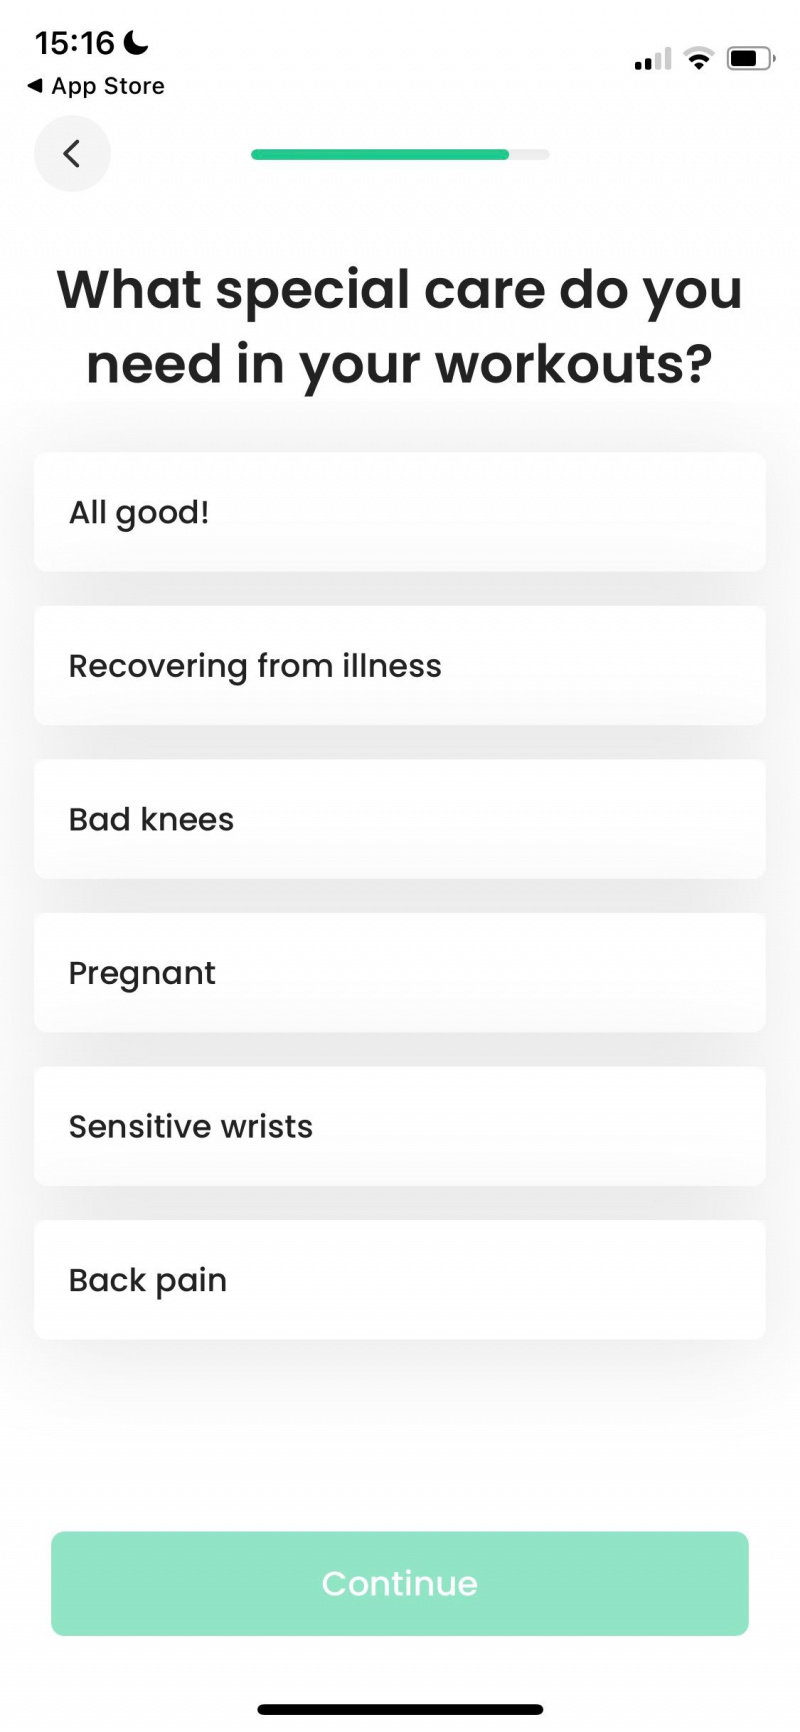   צילום מסך של אפליקציית 7M Workout המציגה שאלות טיפול מיוחדות לפני פעילות גופנית